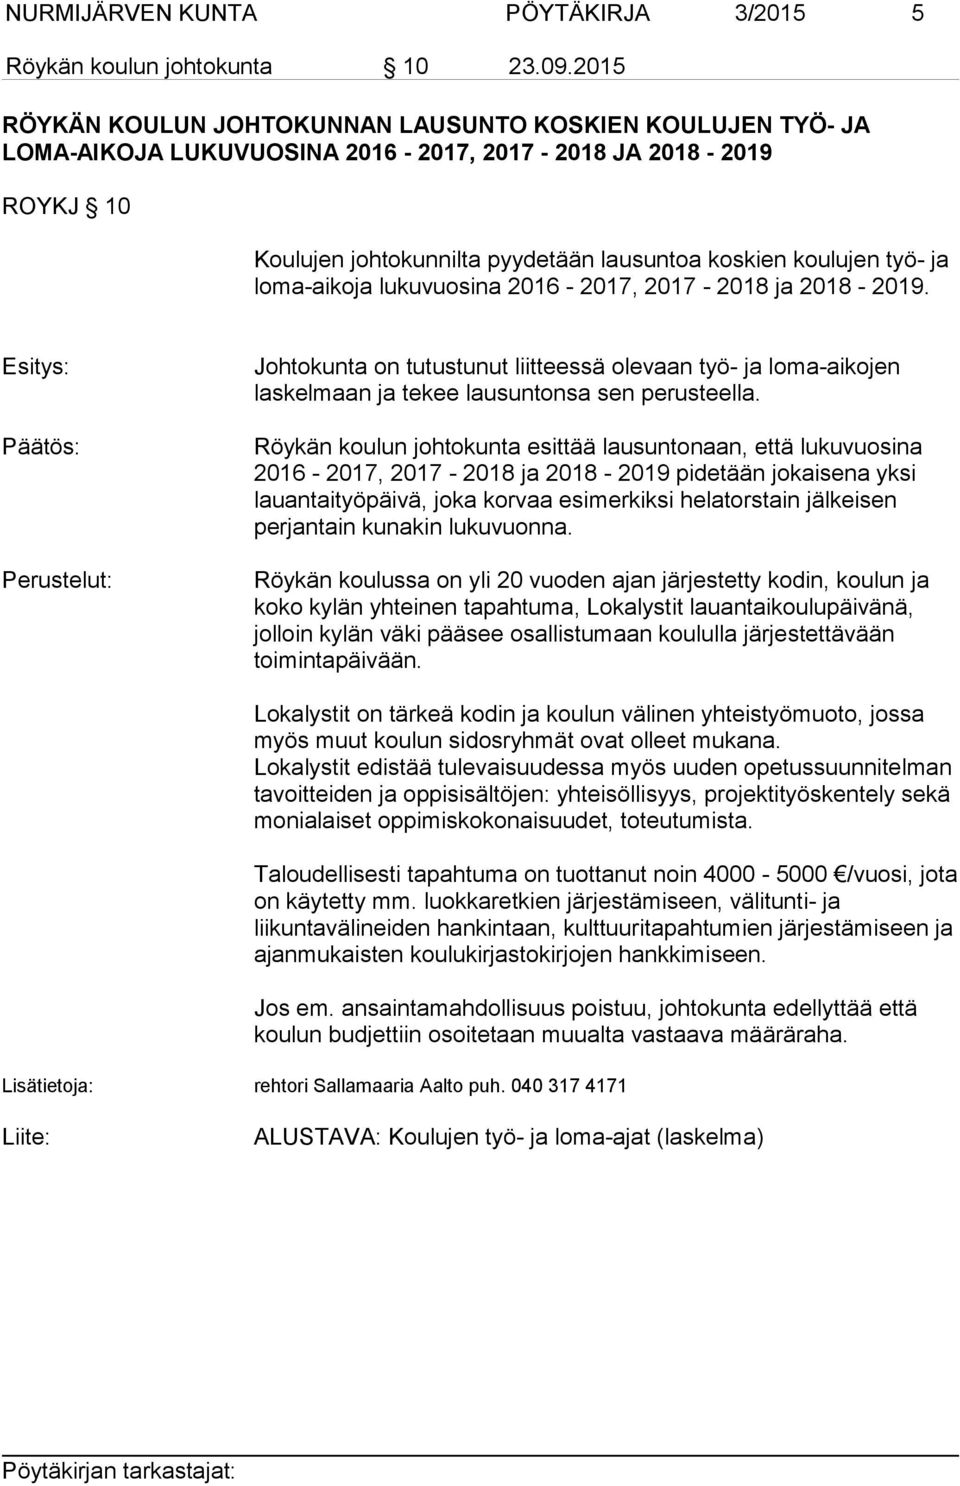 loma-aikoja lukuvuosina 2016-2017, 2017-2018 ja 2018-2019. Esitys: Perustelut: Johtokunta on tutustunut liitteessä olevaan työ- ja loma-aikojen laskelmaan ja tekee lausuntonsa sen perusteella.